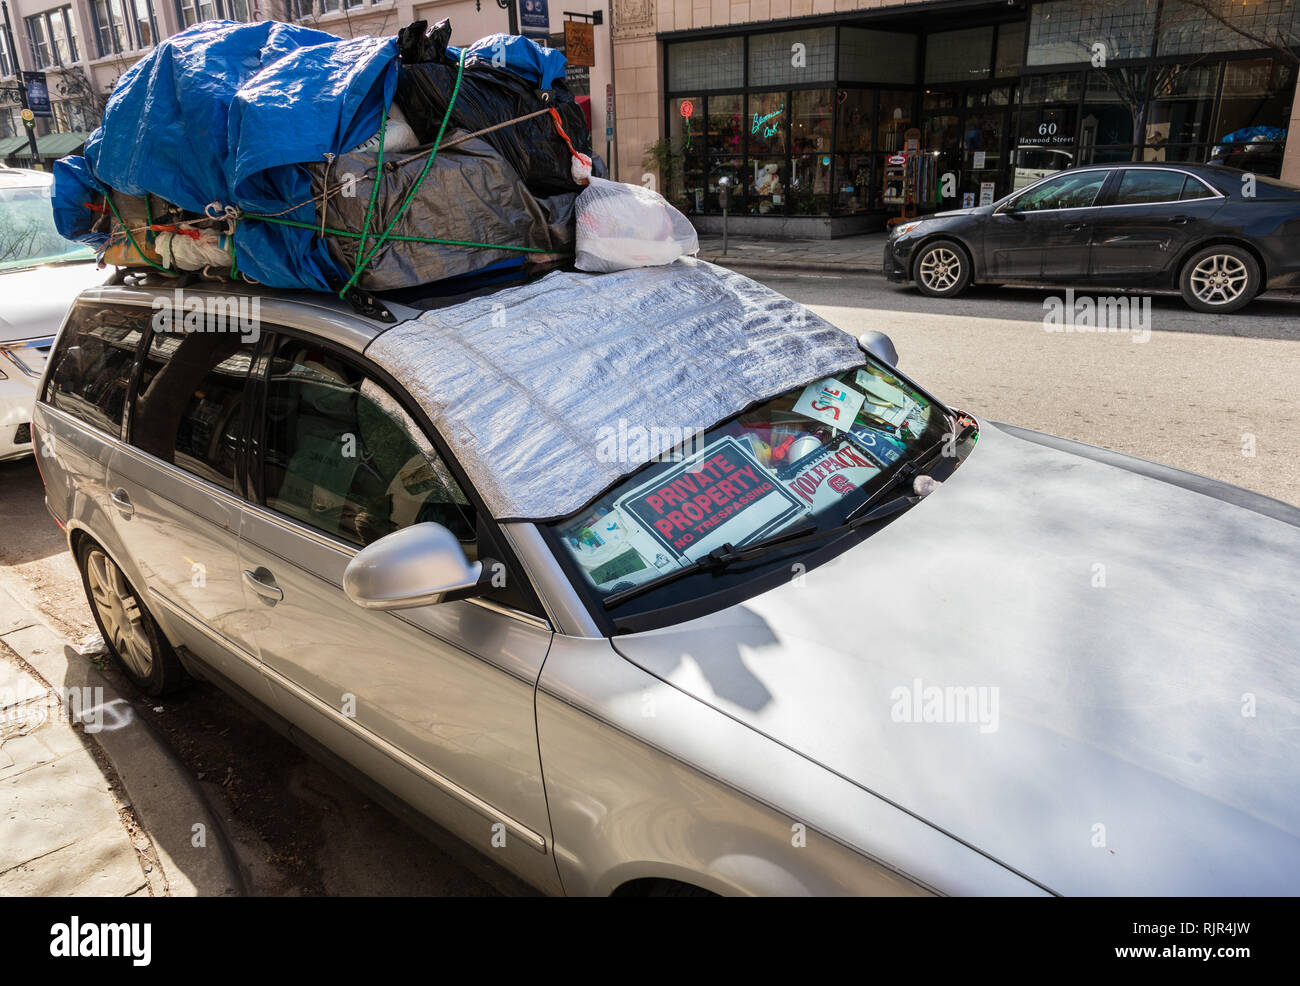 ASHEVILLE, NC, Stati Uniti d'America-2/3/19: una vettura ha riempito del cruscotto con segni e cestino, e riempiti di sacchetti di plastica legata sul tetto. Foto Stock